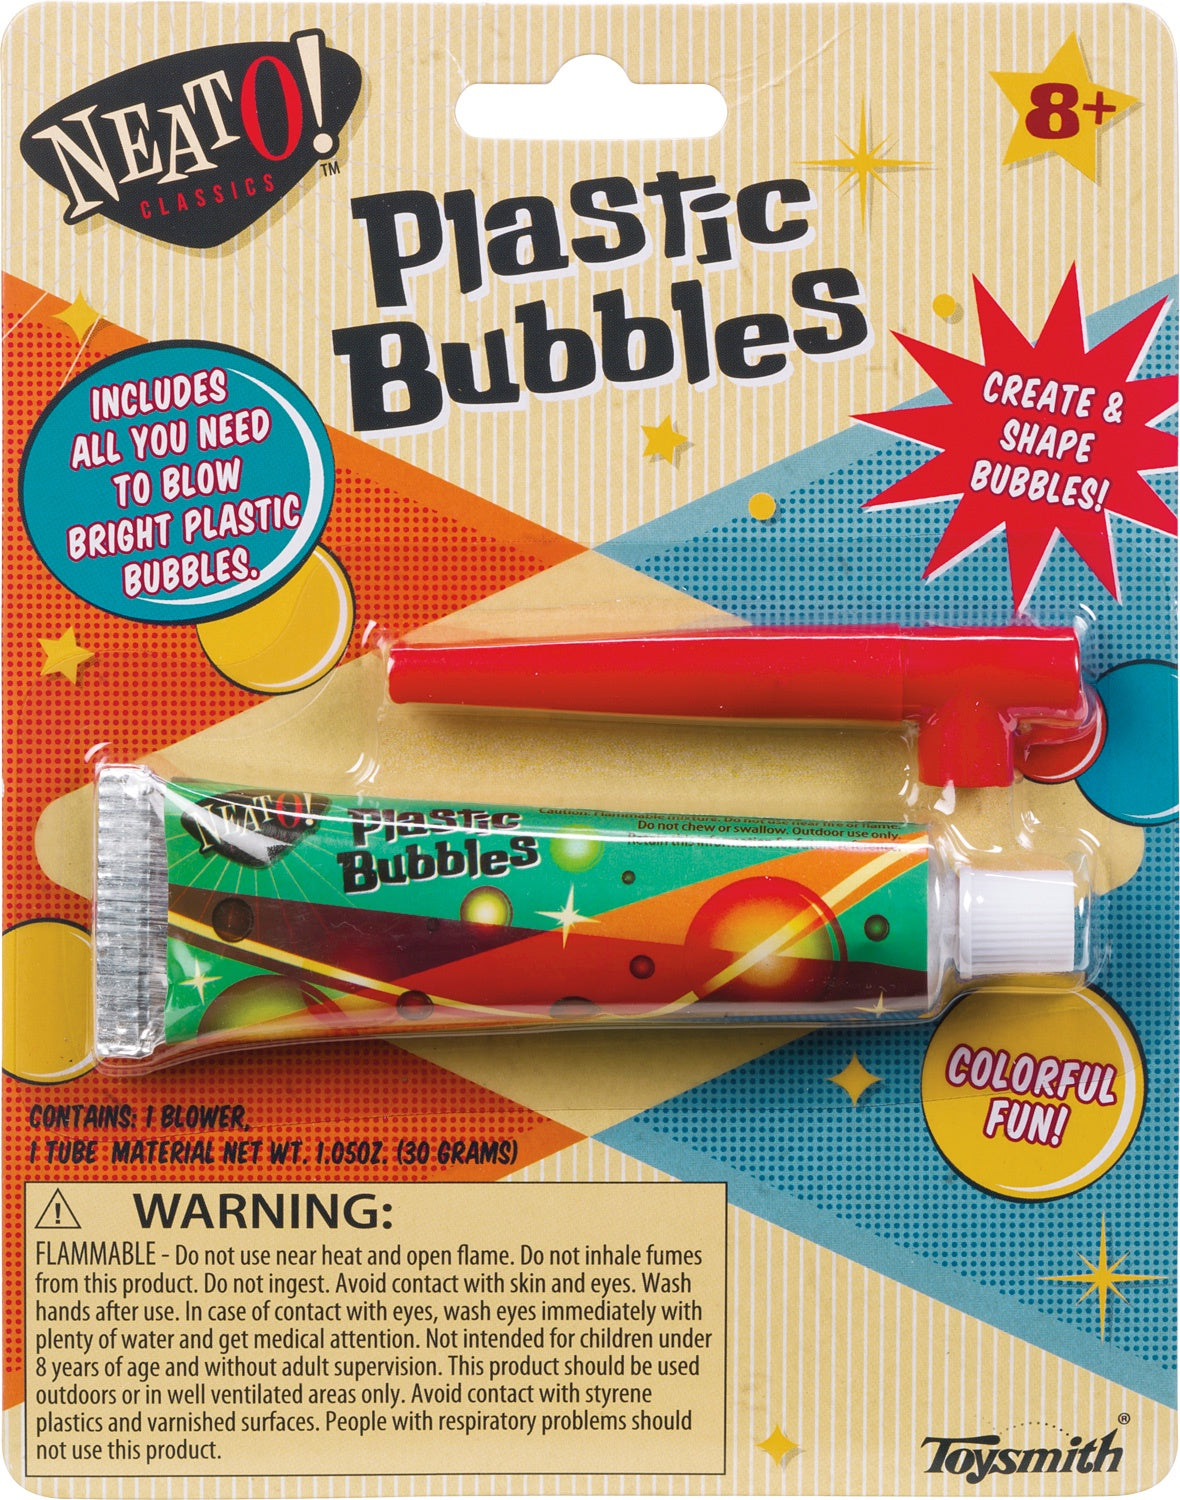 Plastic Bubbles Neato